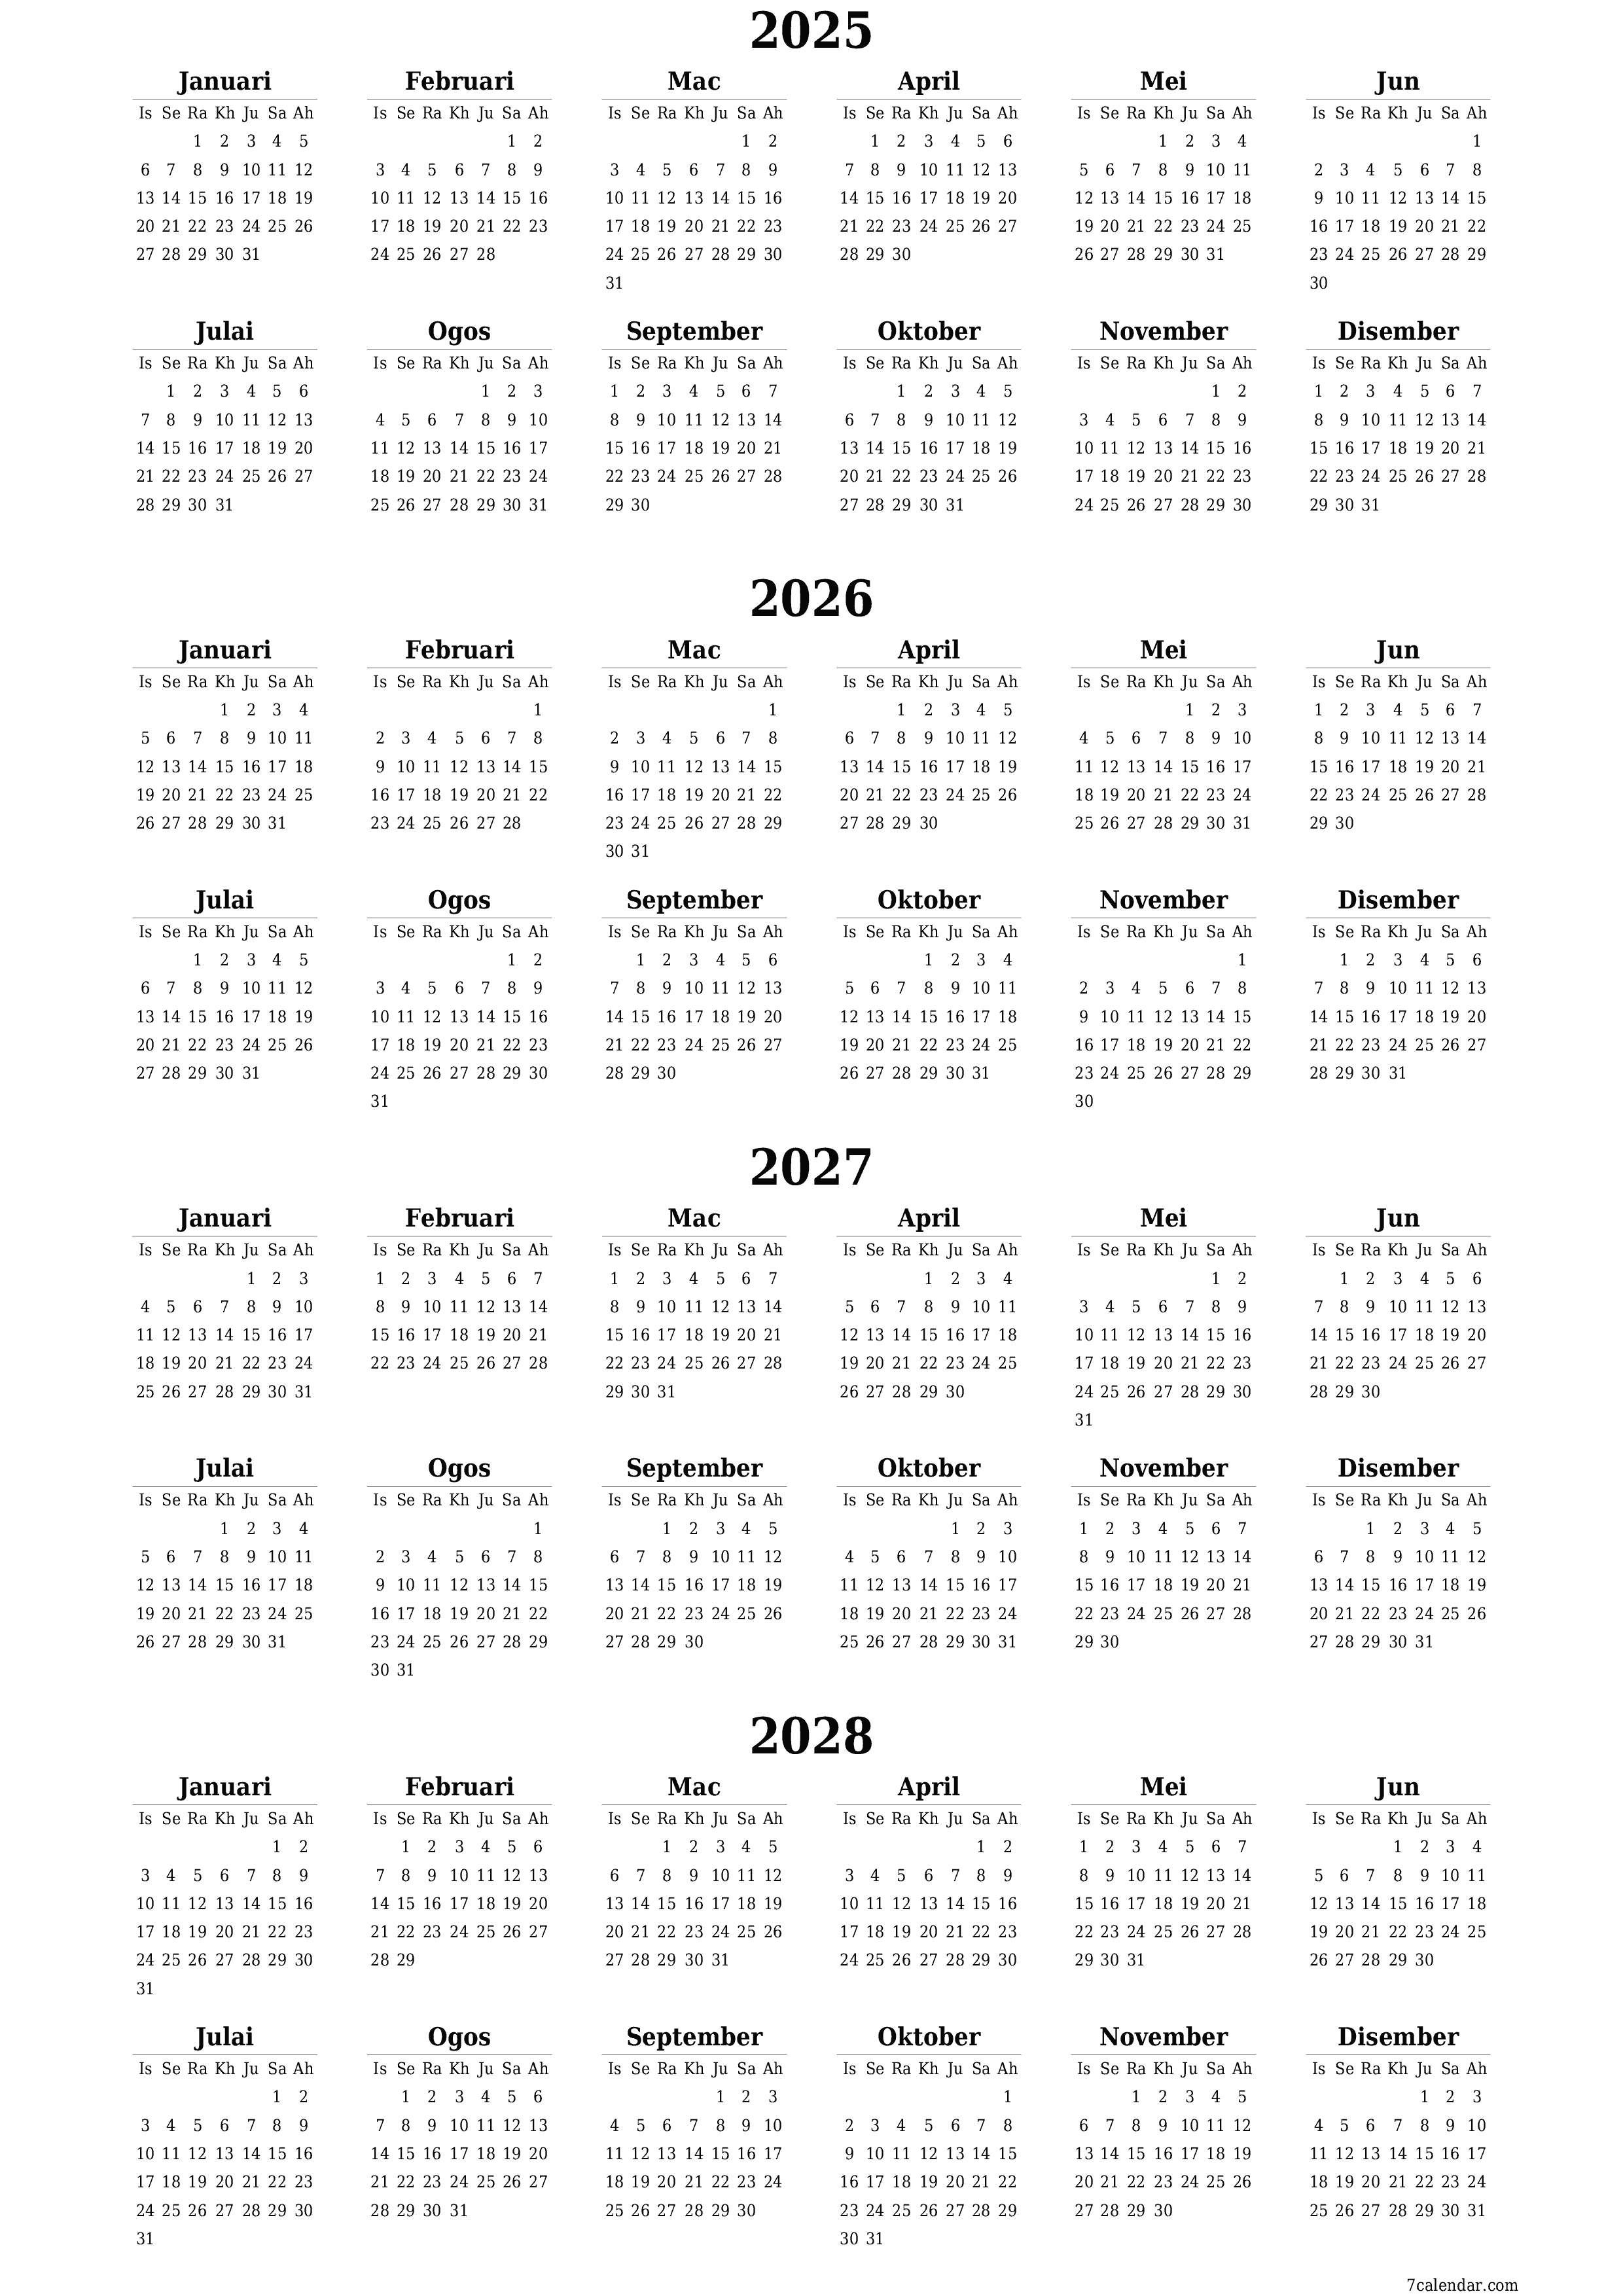  boleh cetak dinding templat percumamenegak Tahunan kalendar Mac (Mar) 2025